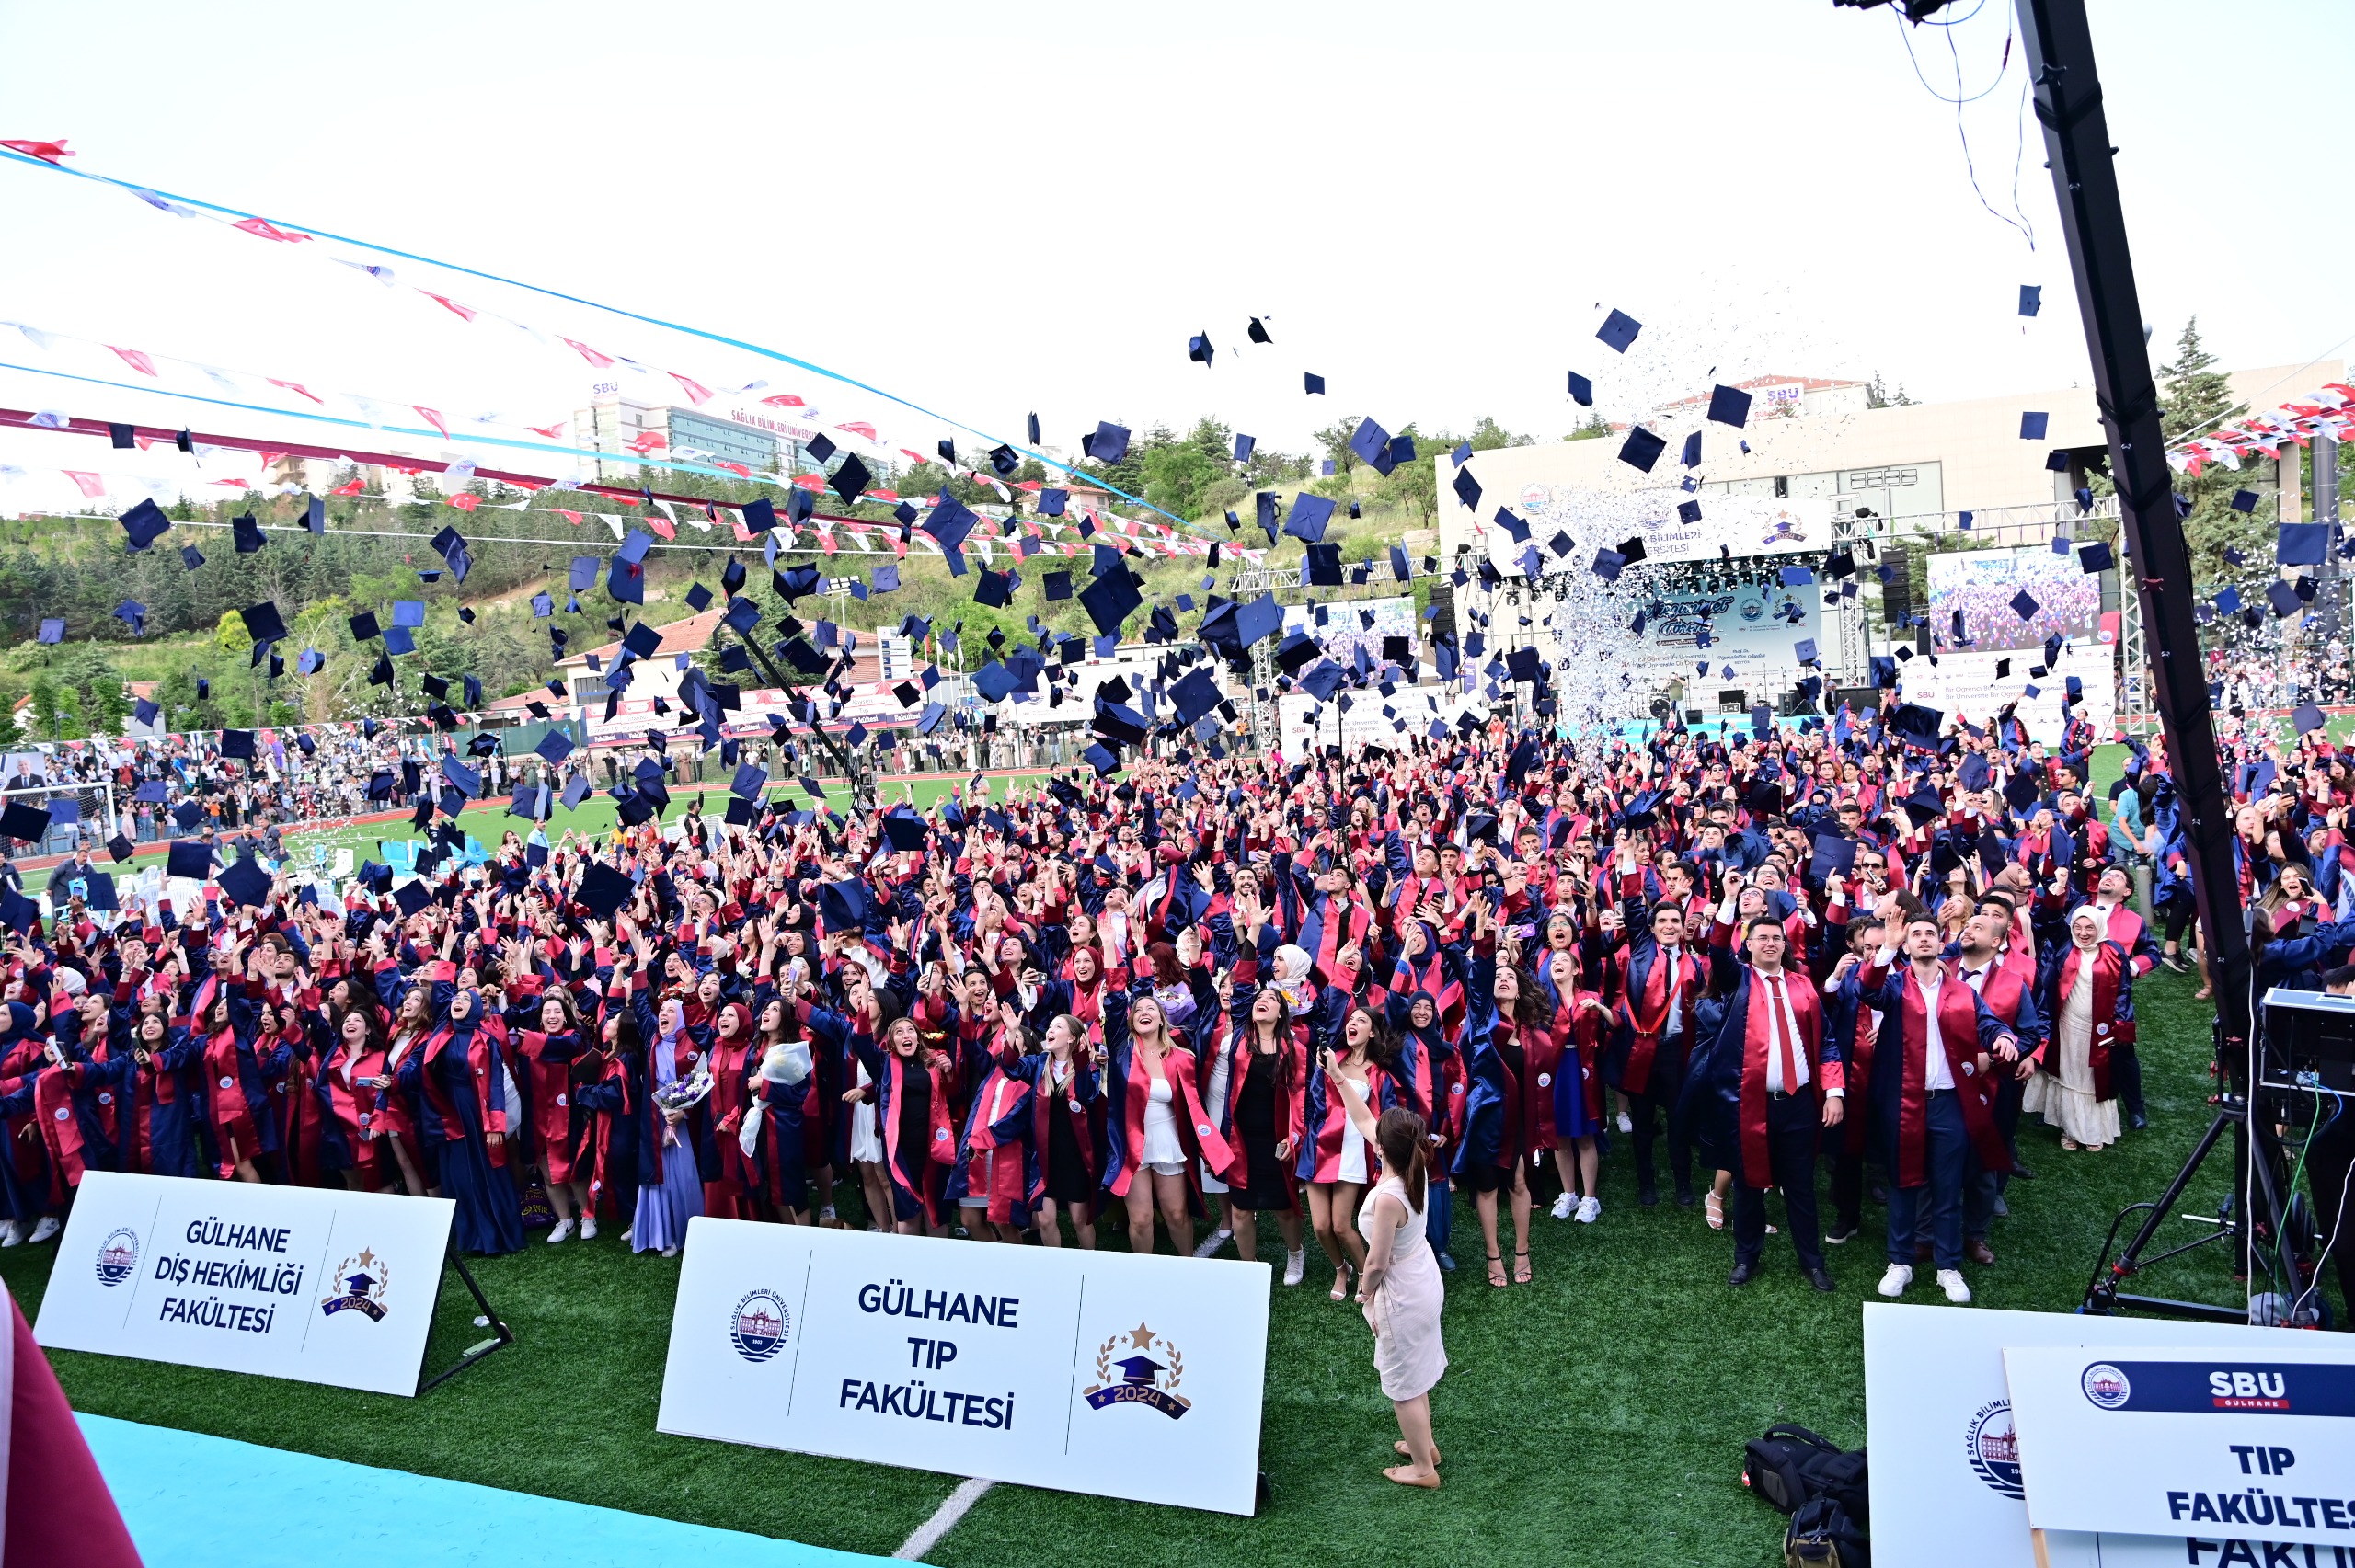 Sağlık Bilimleri Üniversitesi Gülhane Külliyesi 2023-2024 Akademik Yılı toplu mezuniyet töreni, Gülhane Stadyumu'nda büyük bir coşkuyla gerçekleştirildi.